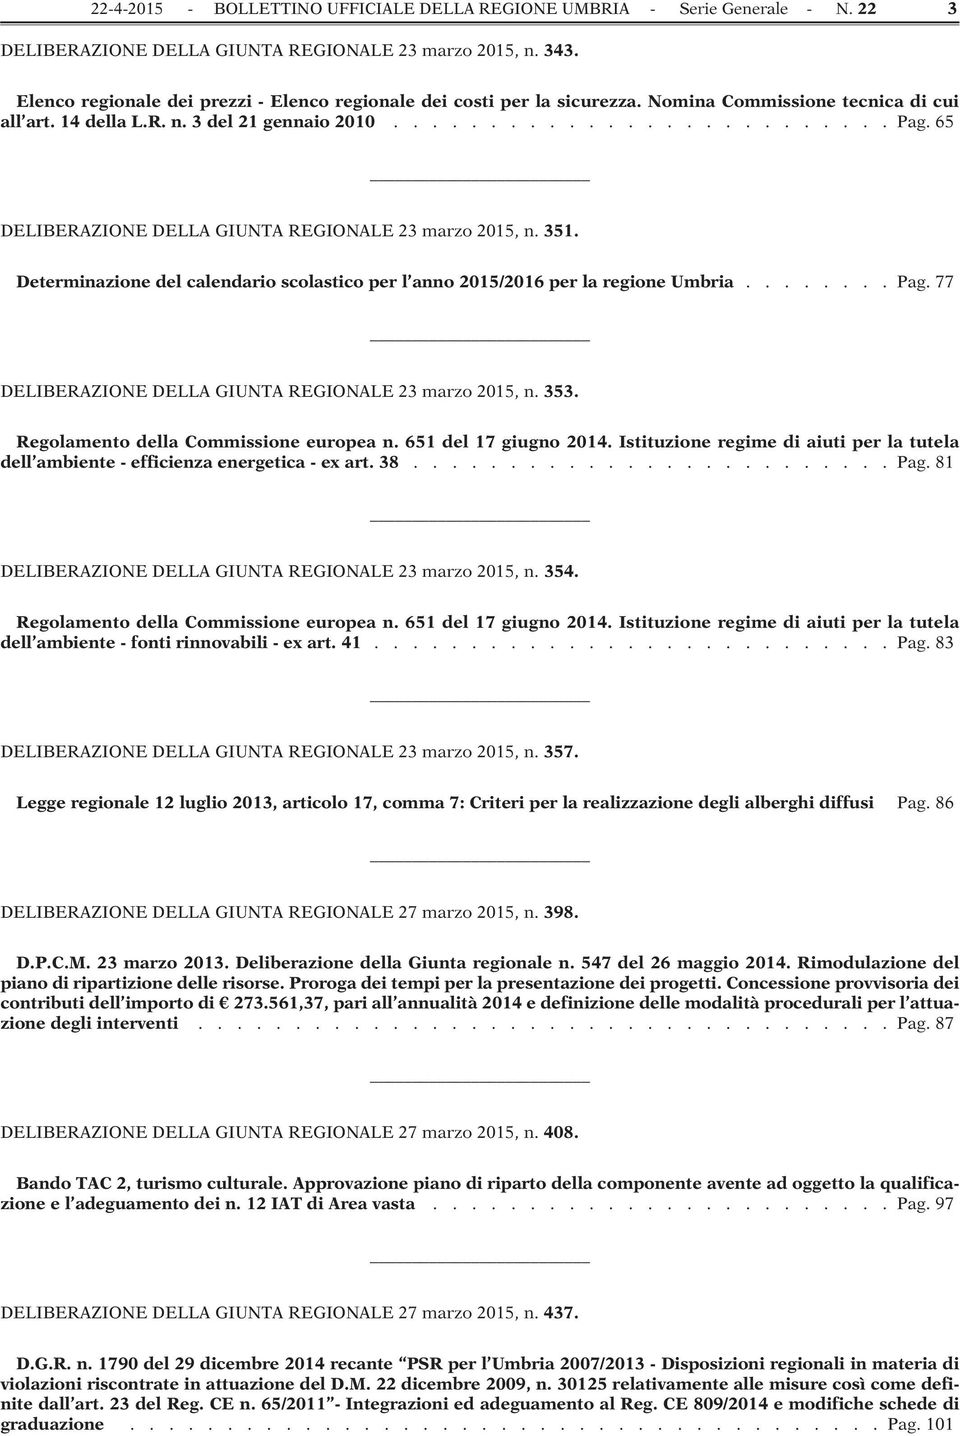 65 DELIBERAZIONE DELLA GIUNTA REGIONALE 23 marzo 2015, n. 351. Determinazione del calendario scolastico per l anno 2015/2016 per la regione Umbria........ Pag.